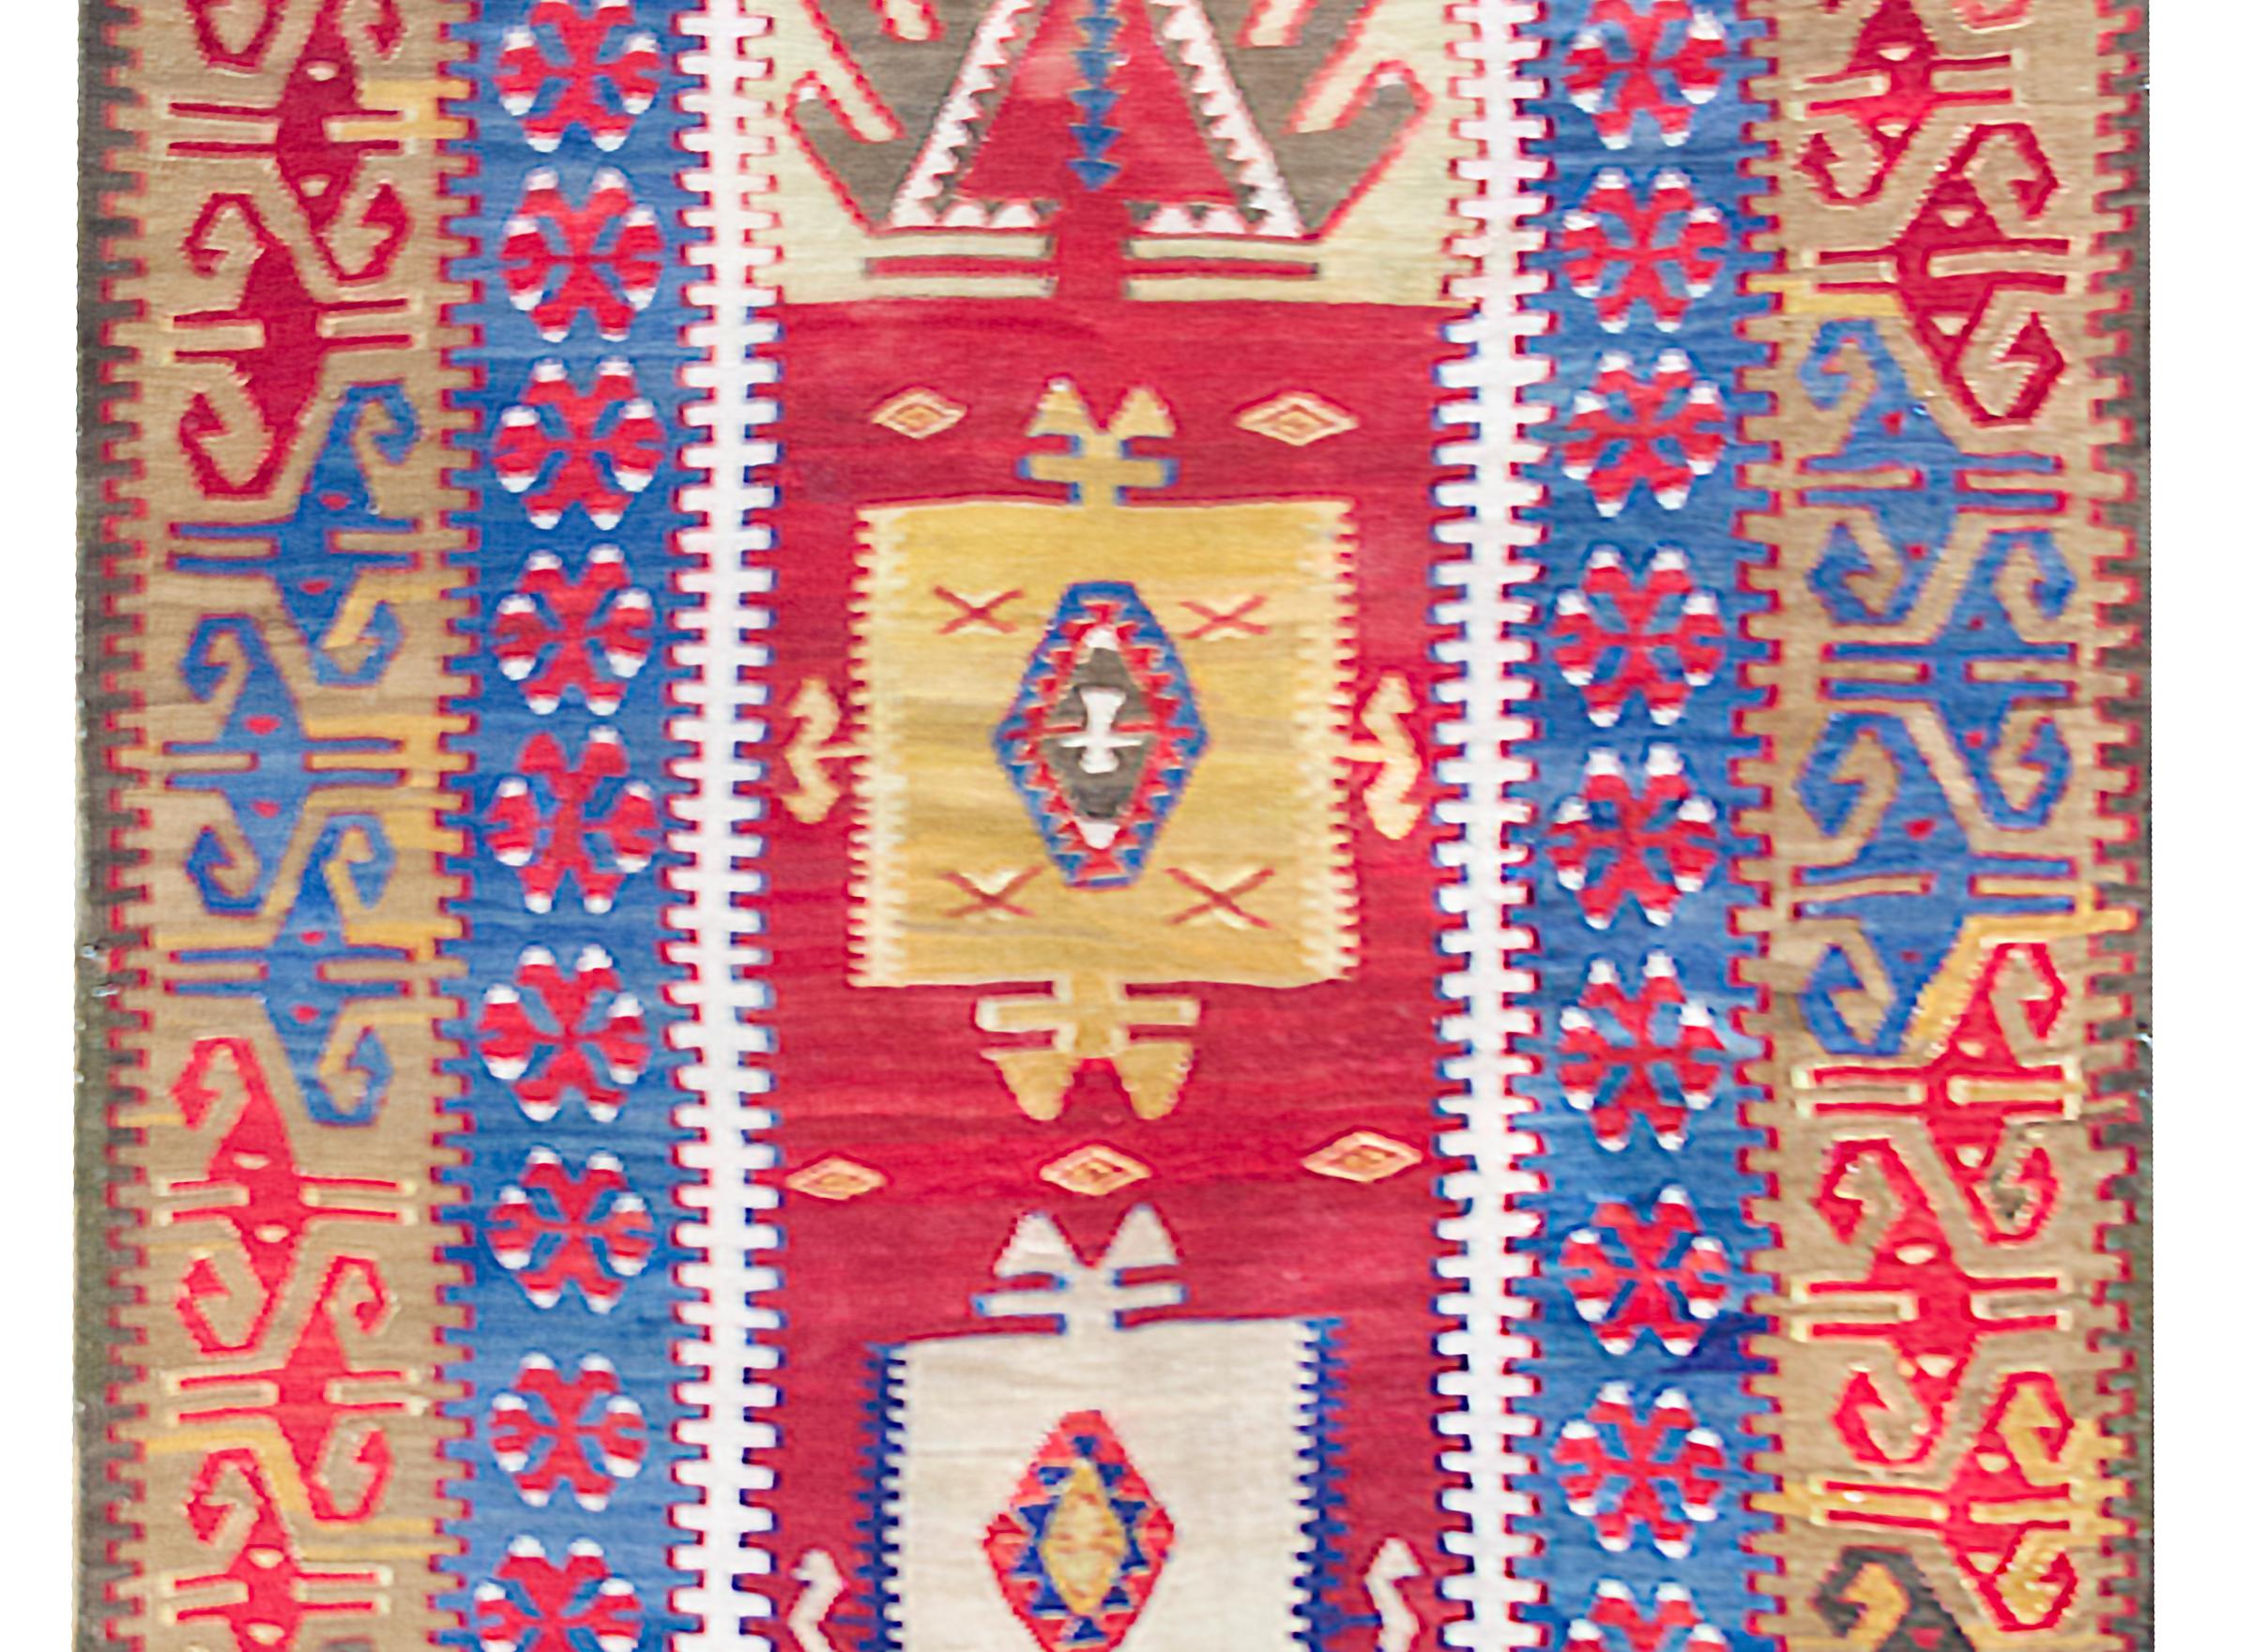 Superbe tapis kilim turc du début du XXe siècle, avec un fantastique motif tribal audacieux contenant deux grands médaillons floraux stylisés au milieu d'un champ de fleurs plus stylisées, entouré d'une bordure florale stylisée complexe, le tout